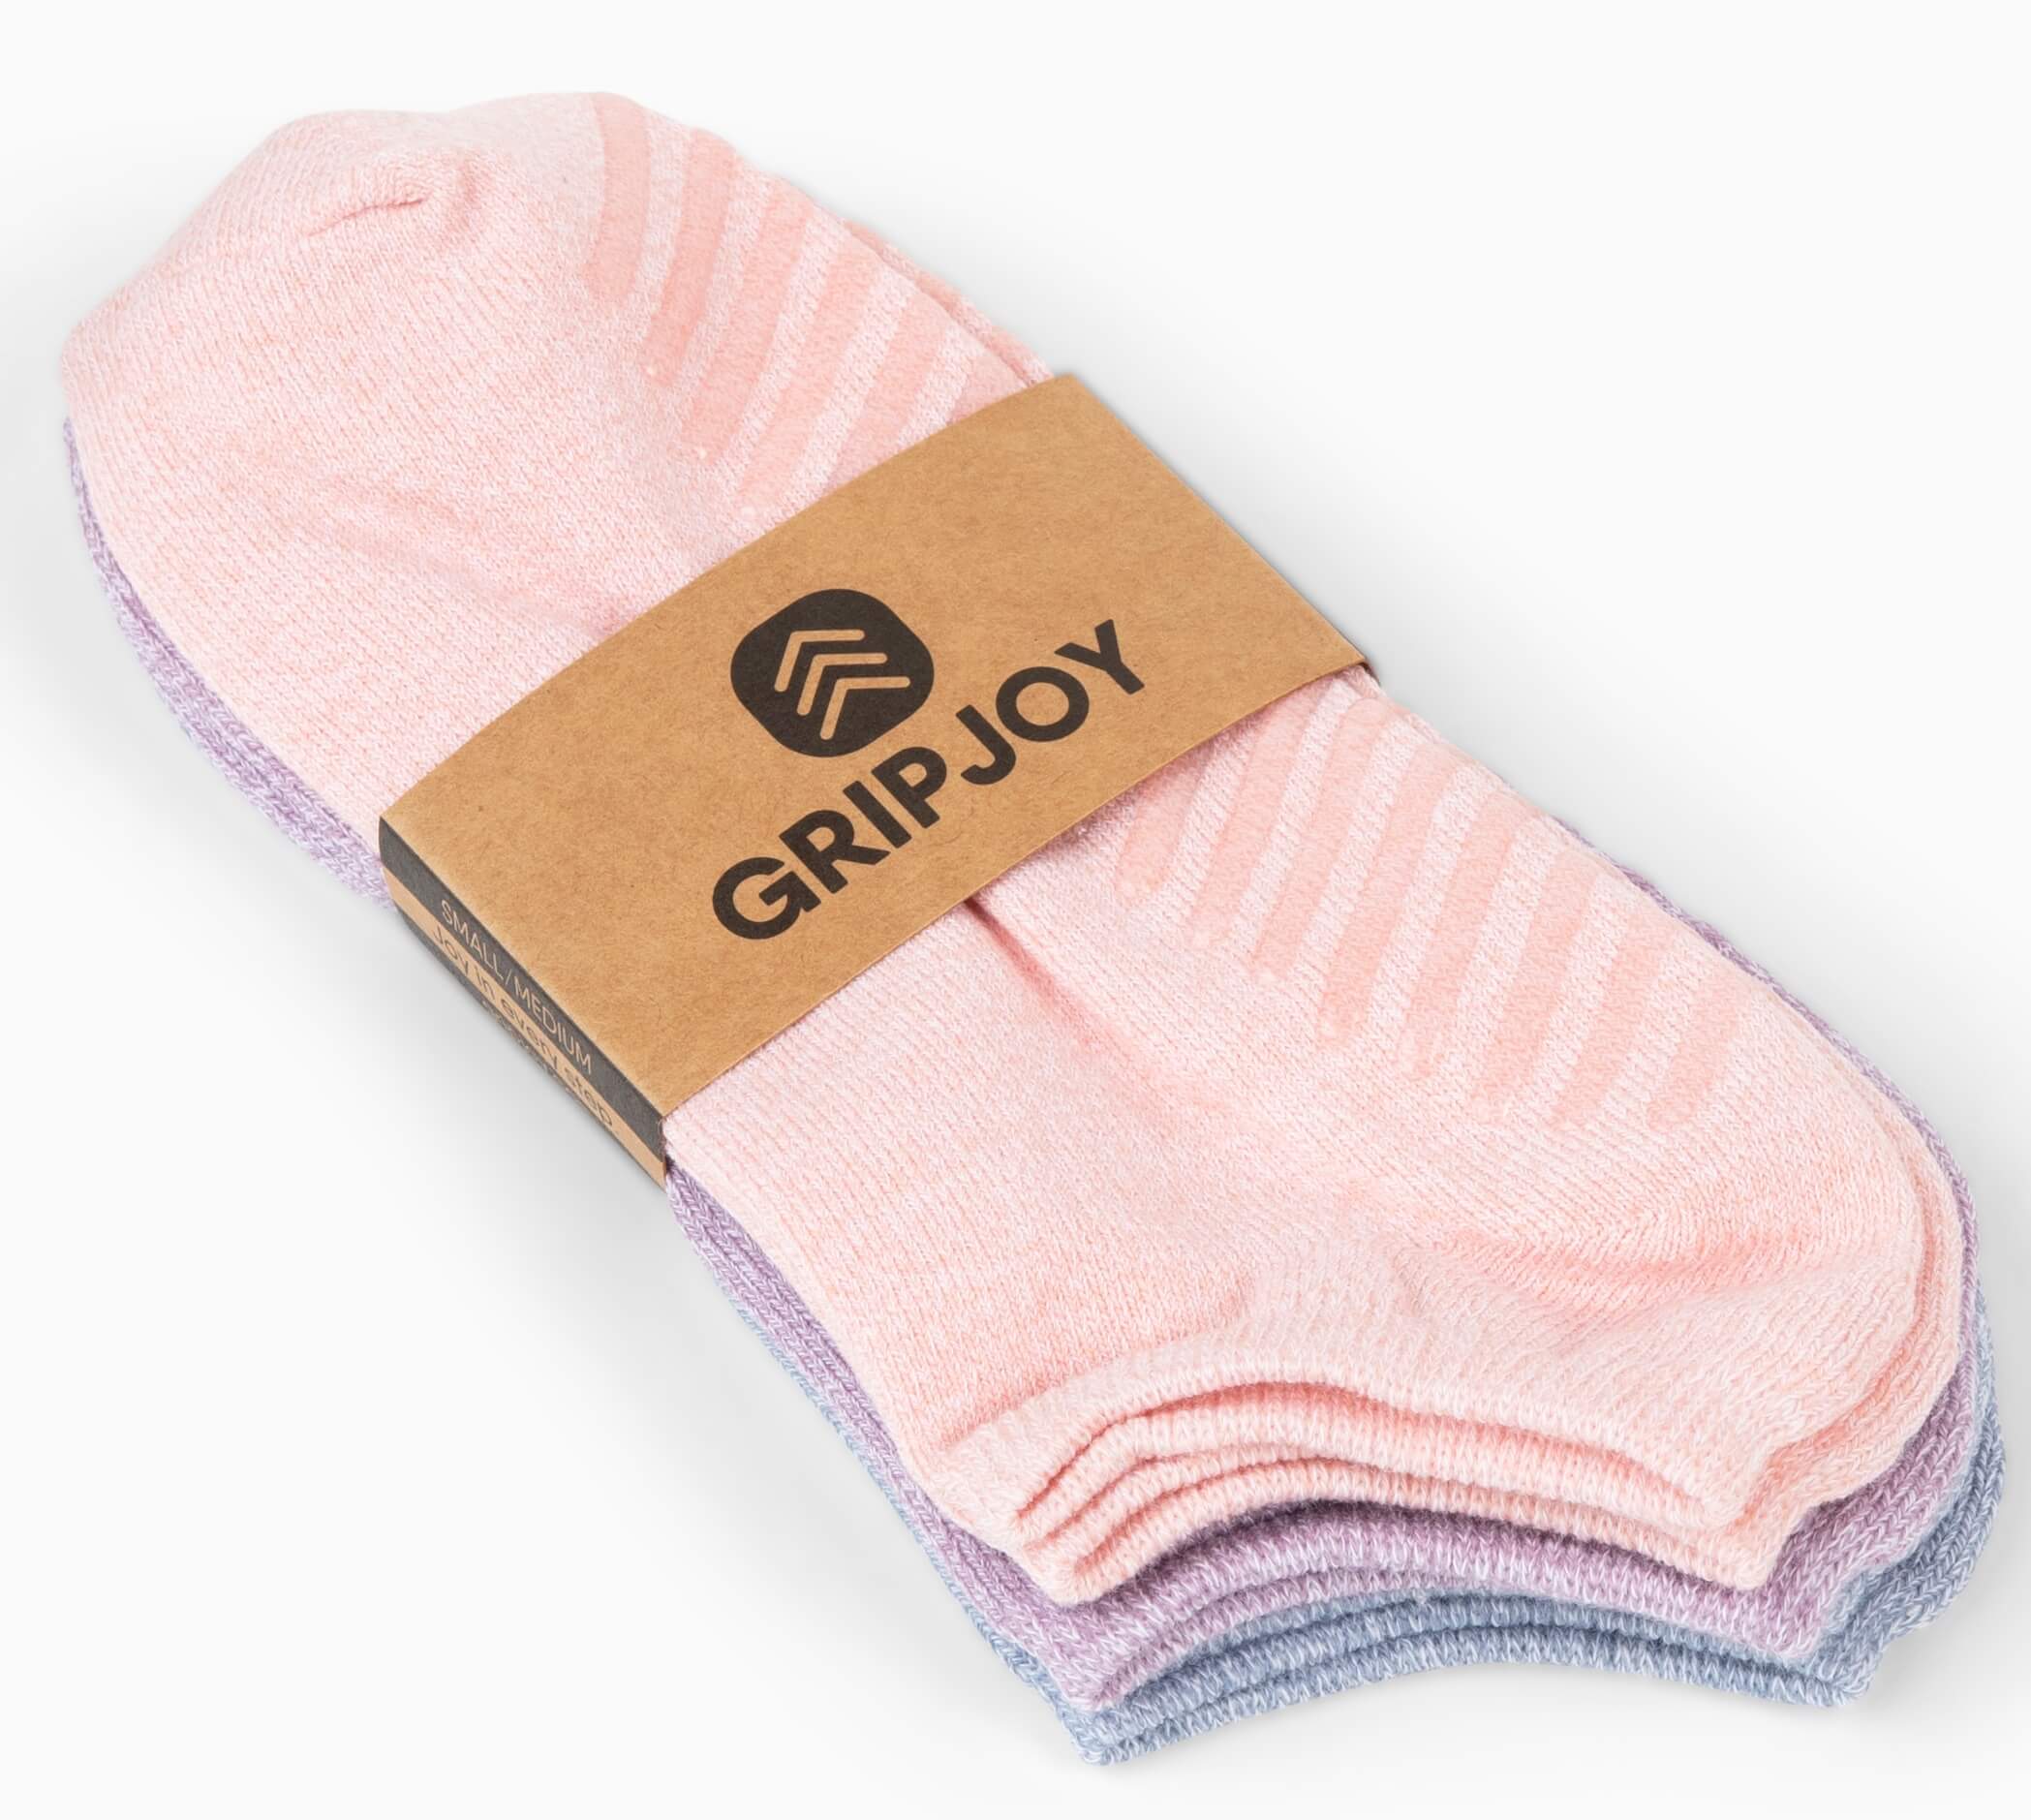 Grip socks for everyday wear | Best non-slip socks hospital | Gripjoy